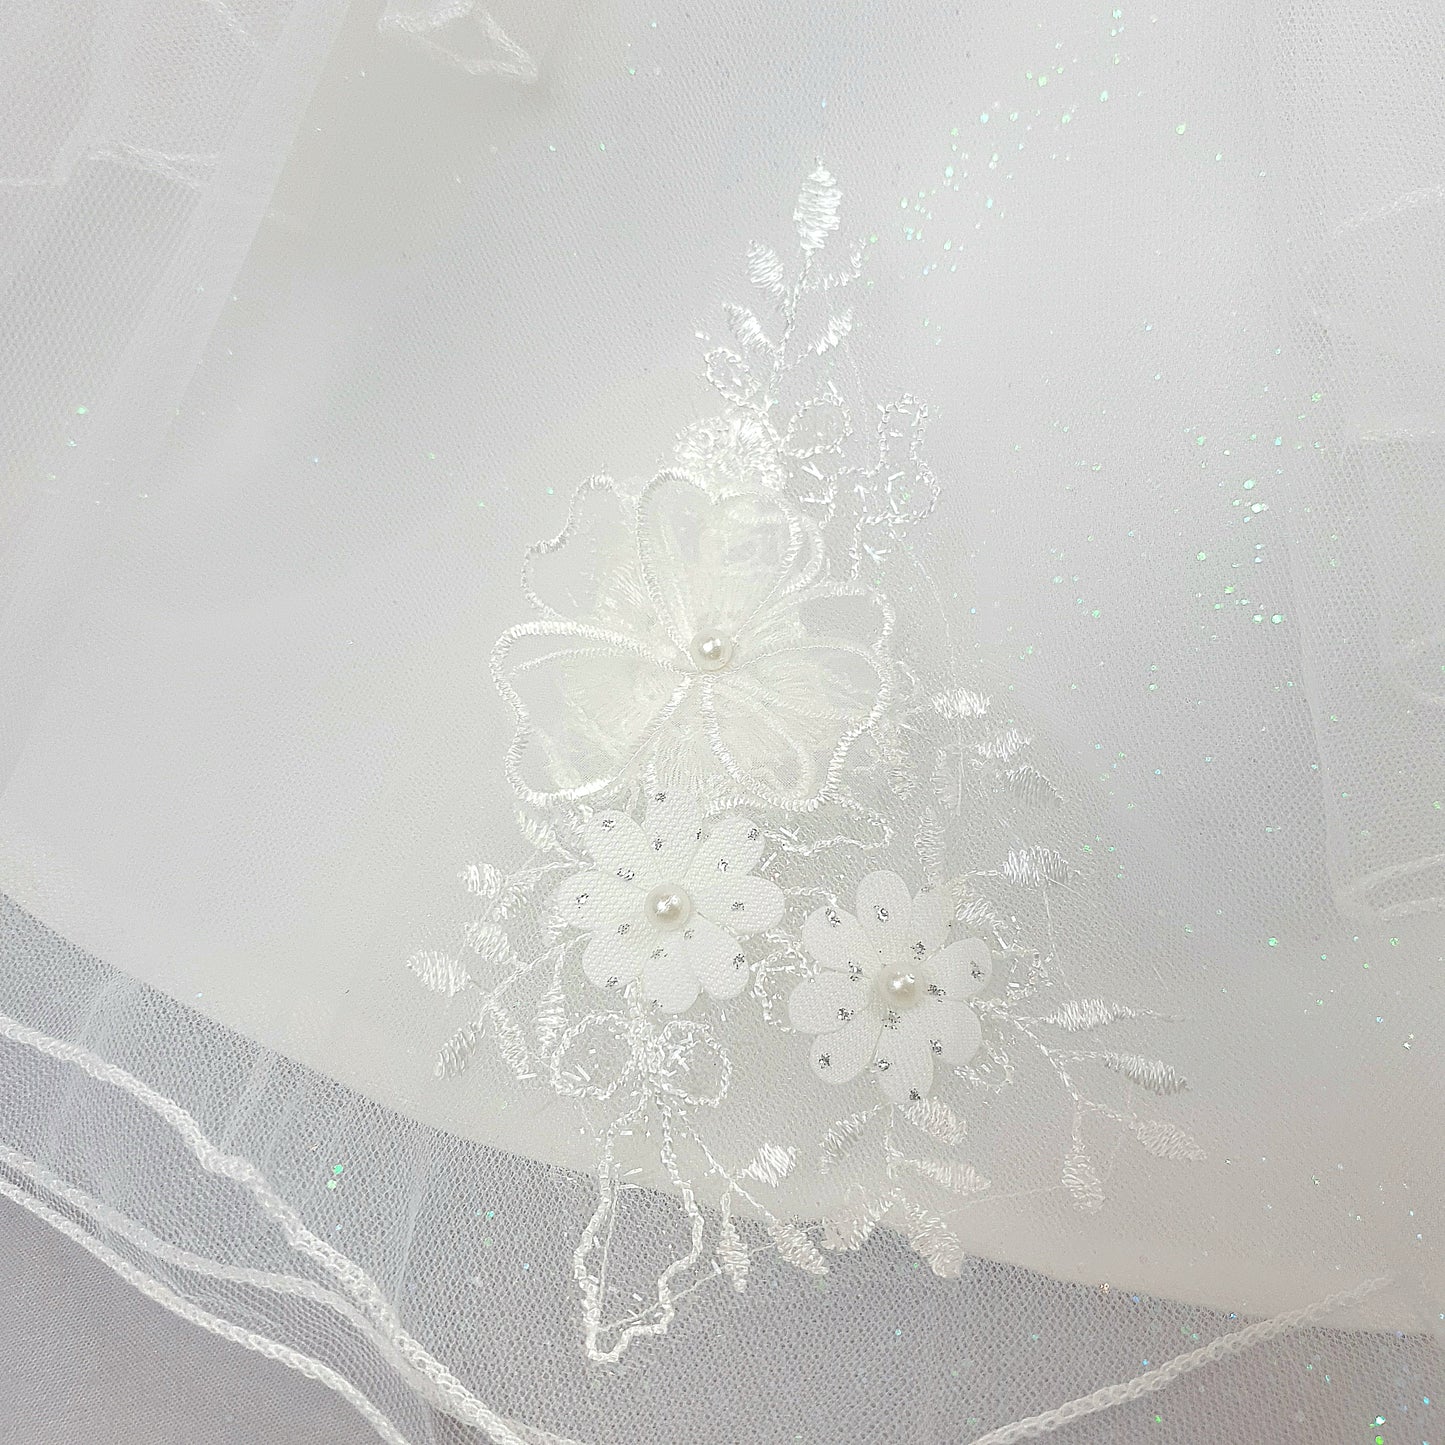 Flower fairy white dress